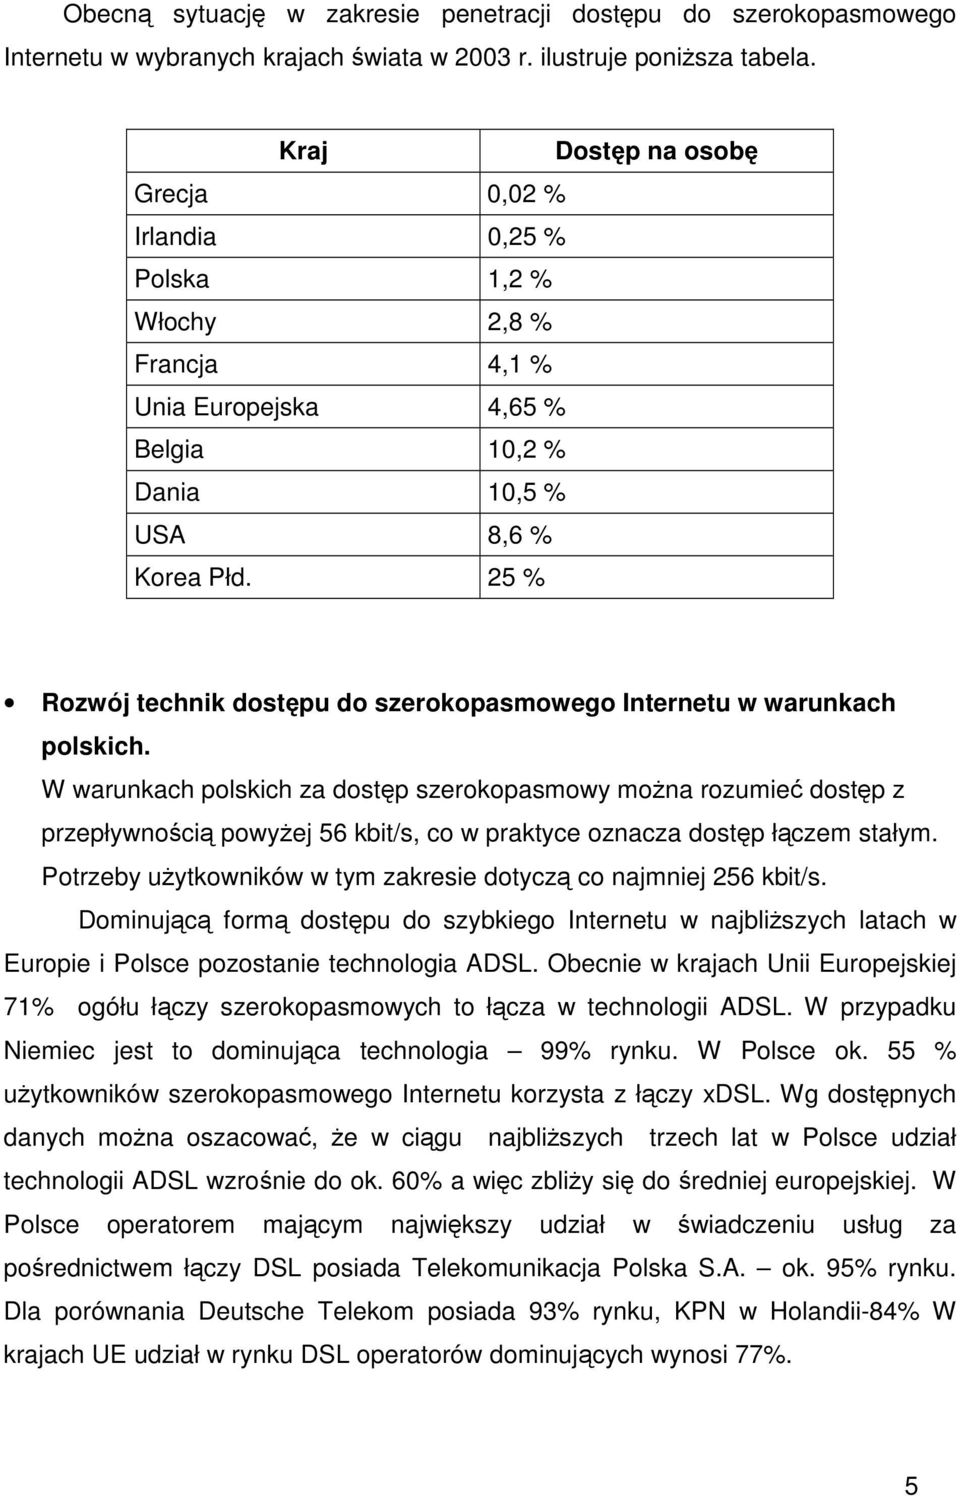 25 % Rozwój technik dostpu do szerokopasmowego Internetu w warunkach polskich.